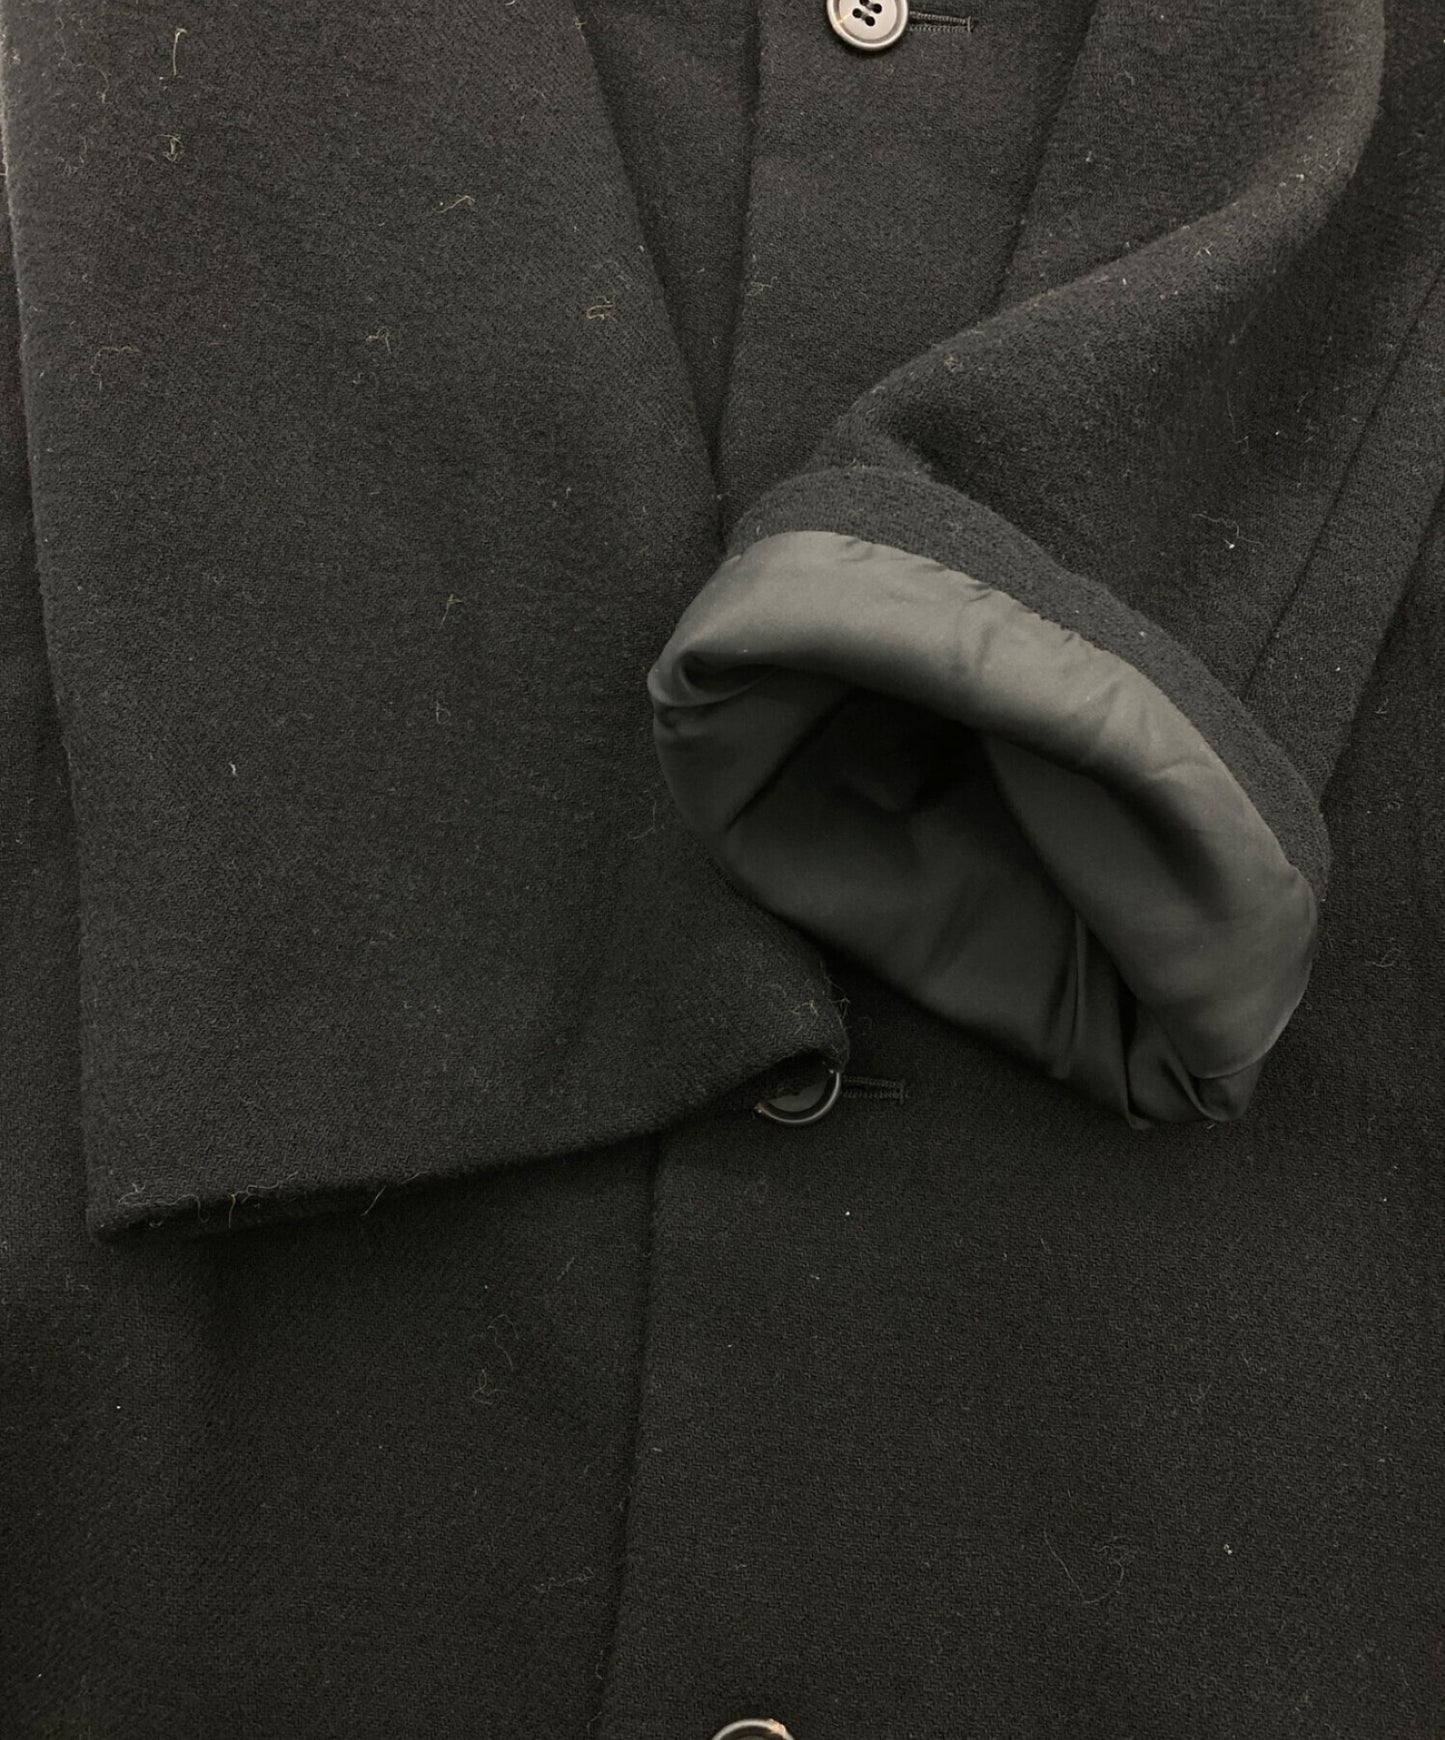 [Pre-owned] Y's wool coat YV-C13-154